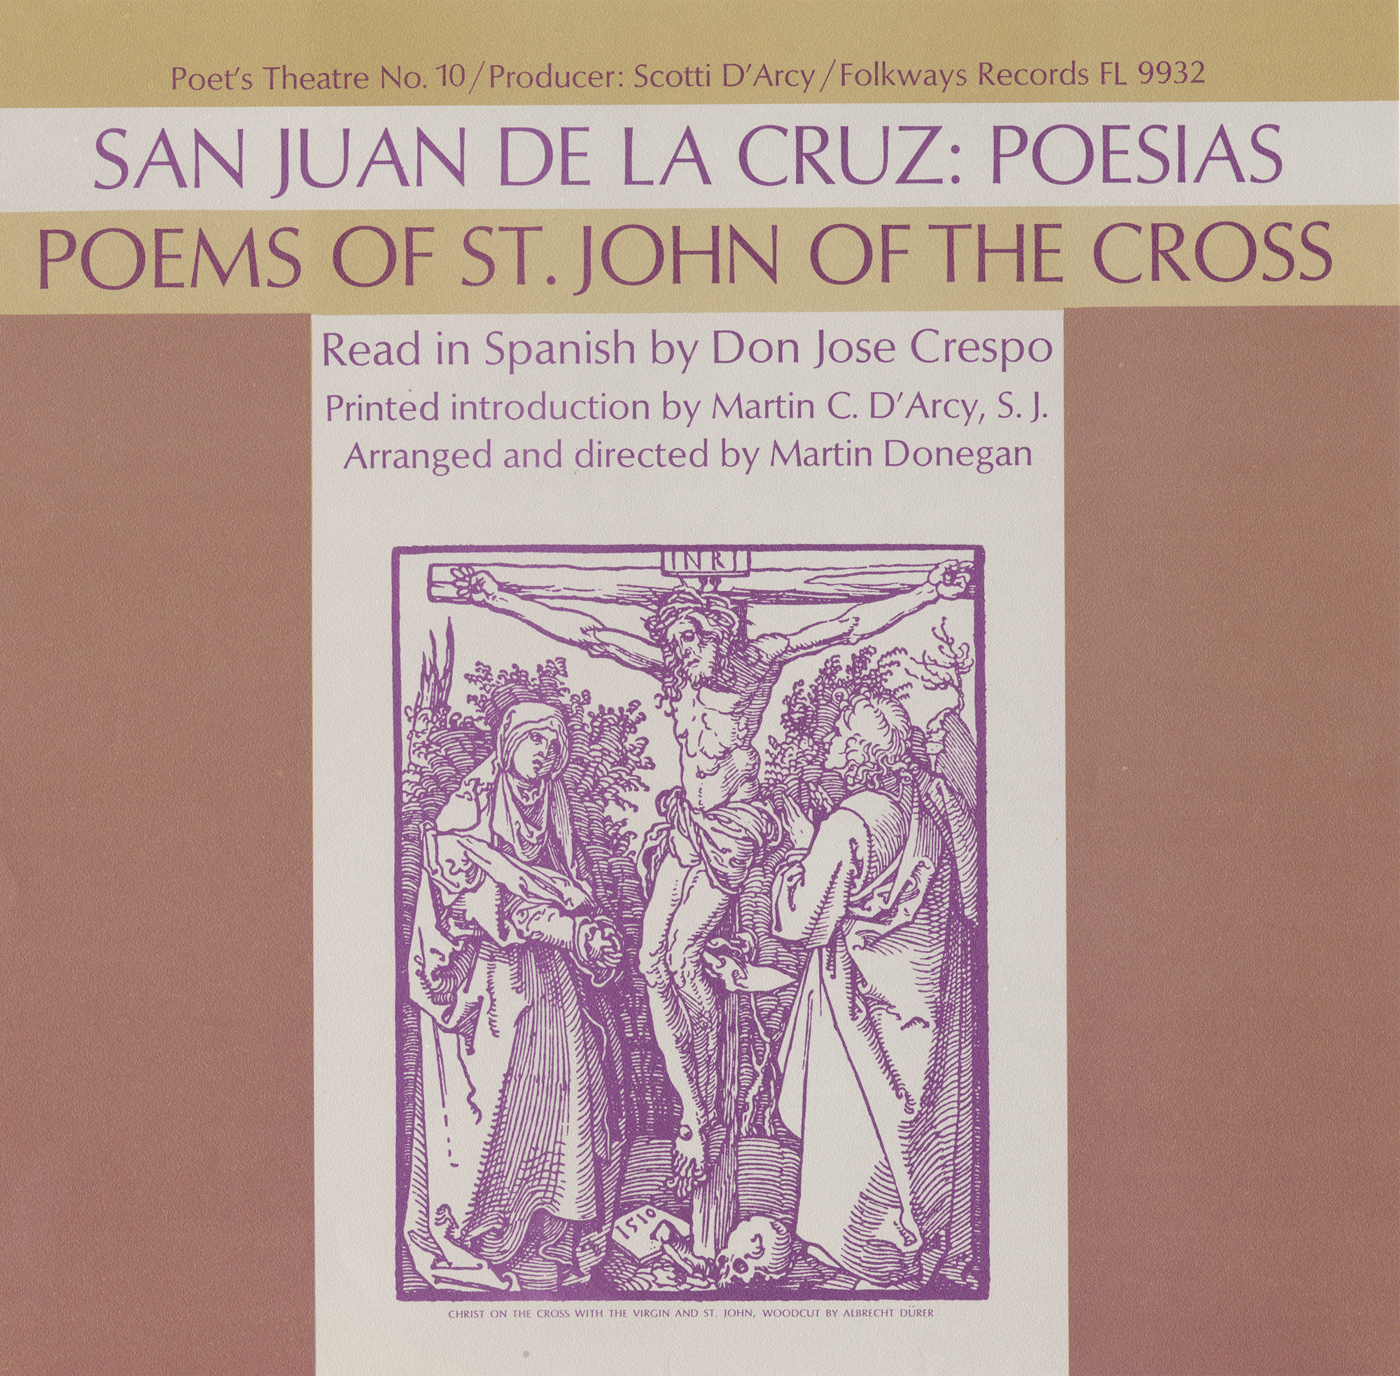 San Juan de la Cruz: Poesias - Vol. I: Read in Spanish by Don Jose Crespo